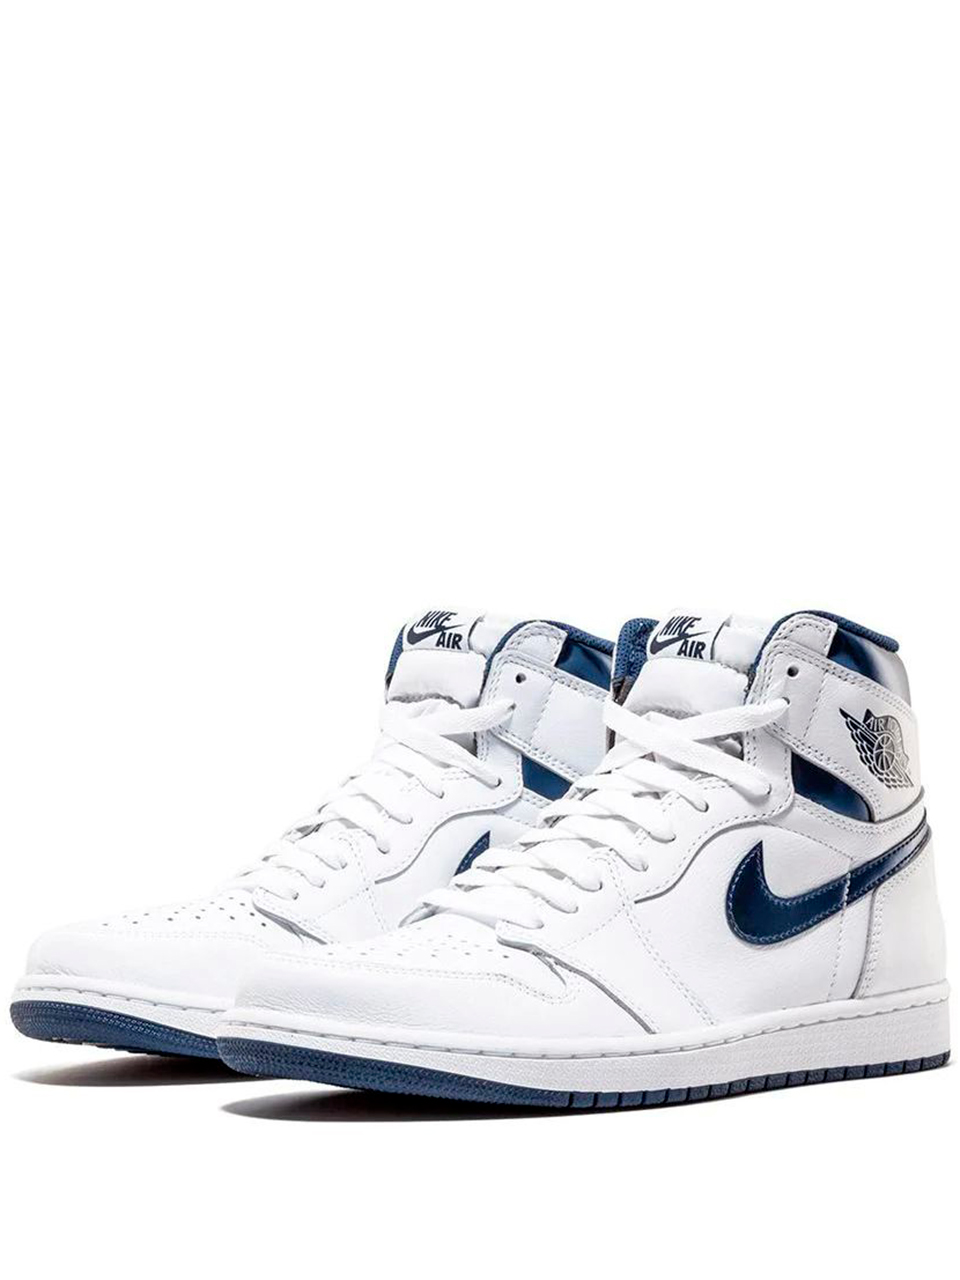 Imagem de: Tênis Nike Air Jordan 1 Retro Branco e Azul